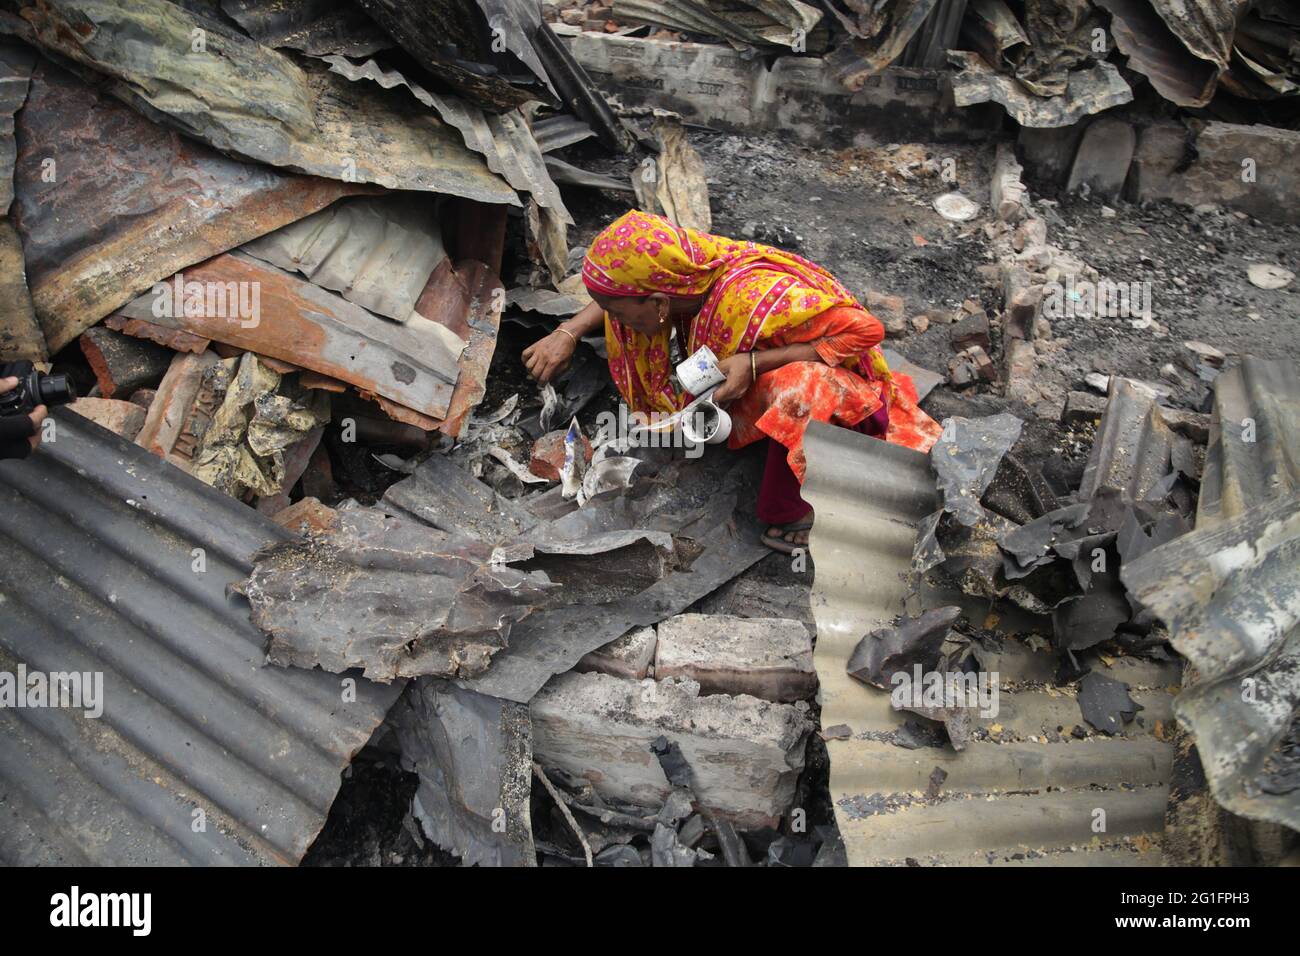 Jun 07 2021.Dhaka, Bangladesch. Nachdem sie das Feuer auslöschen, suchen zwei Frauen in ihrem Haus nach den notwendigen Gegenständen. Stockfoto